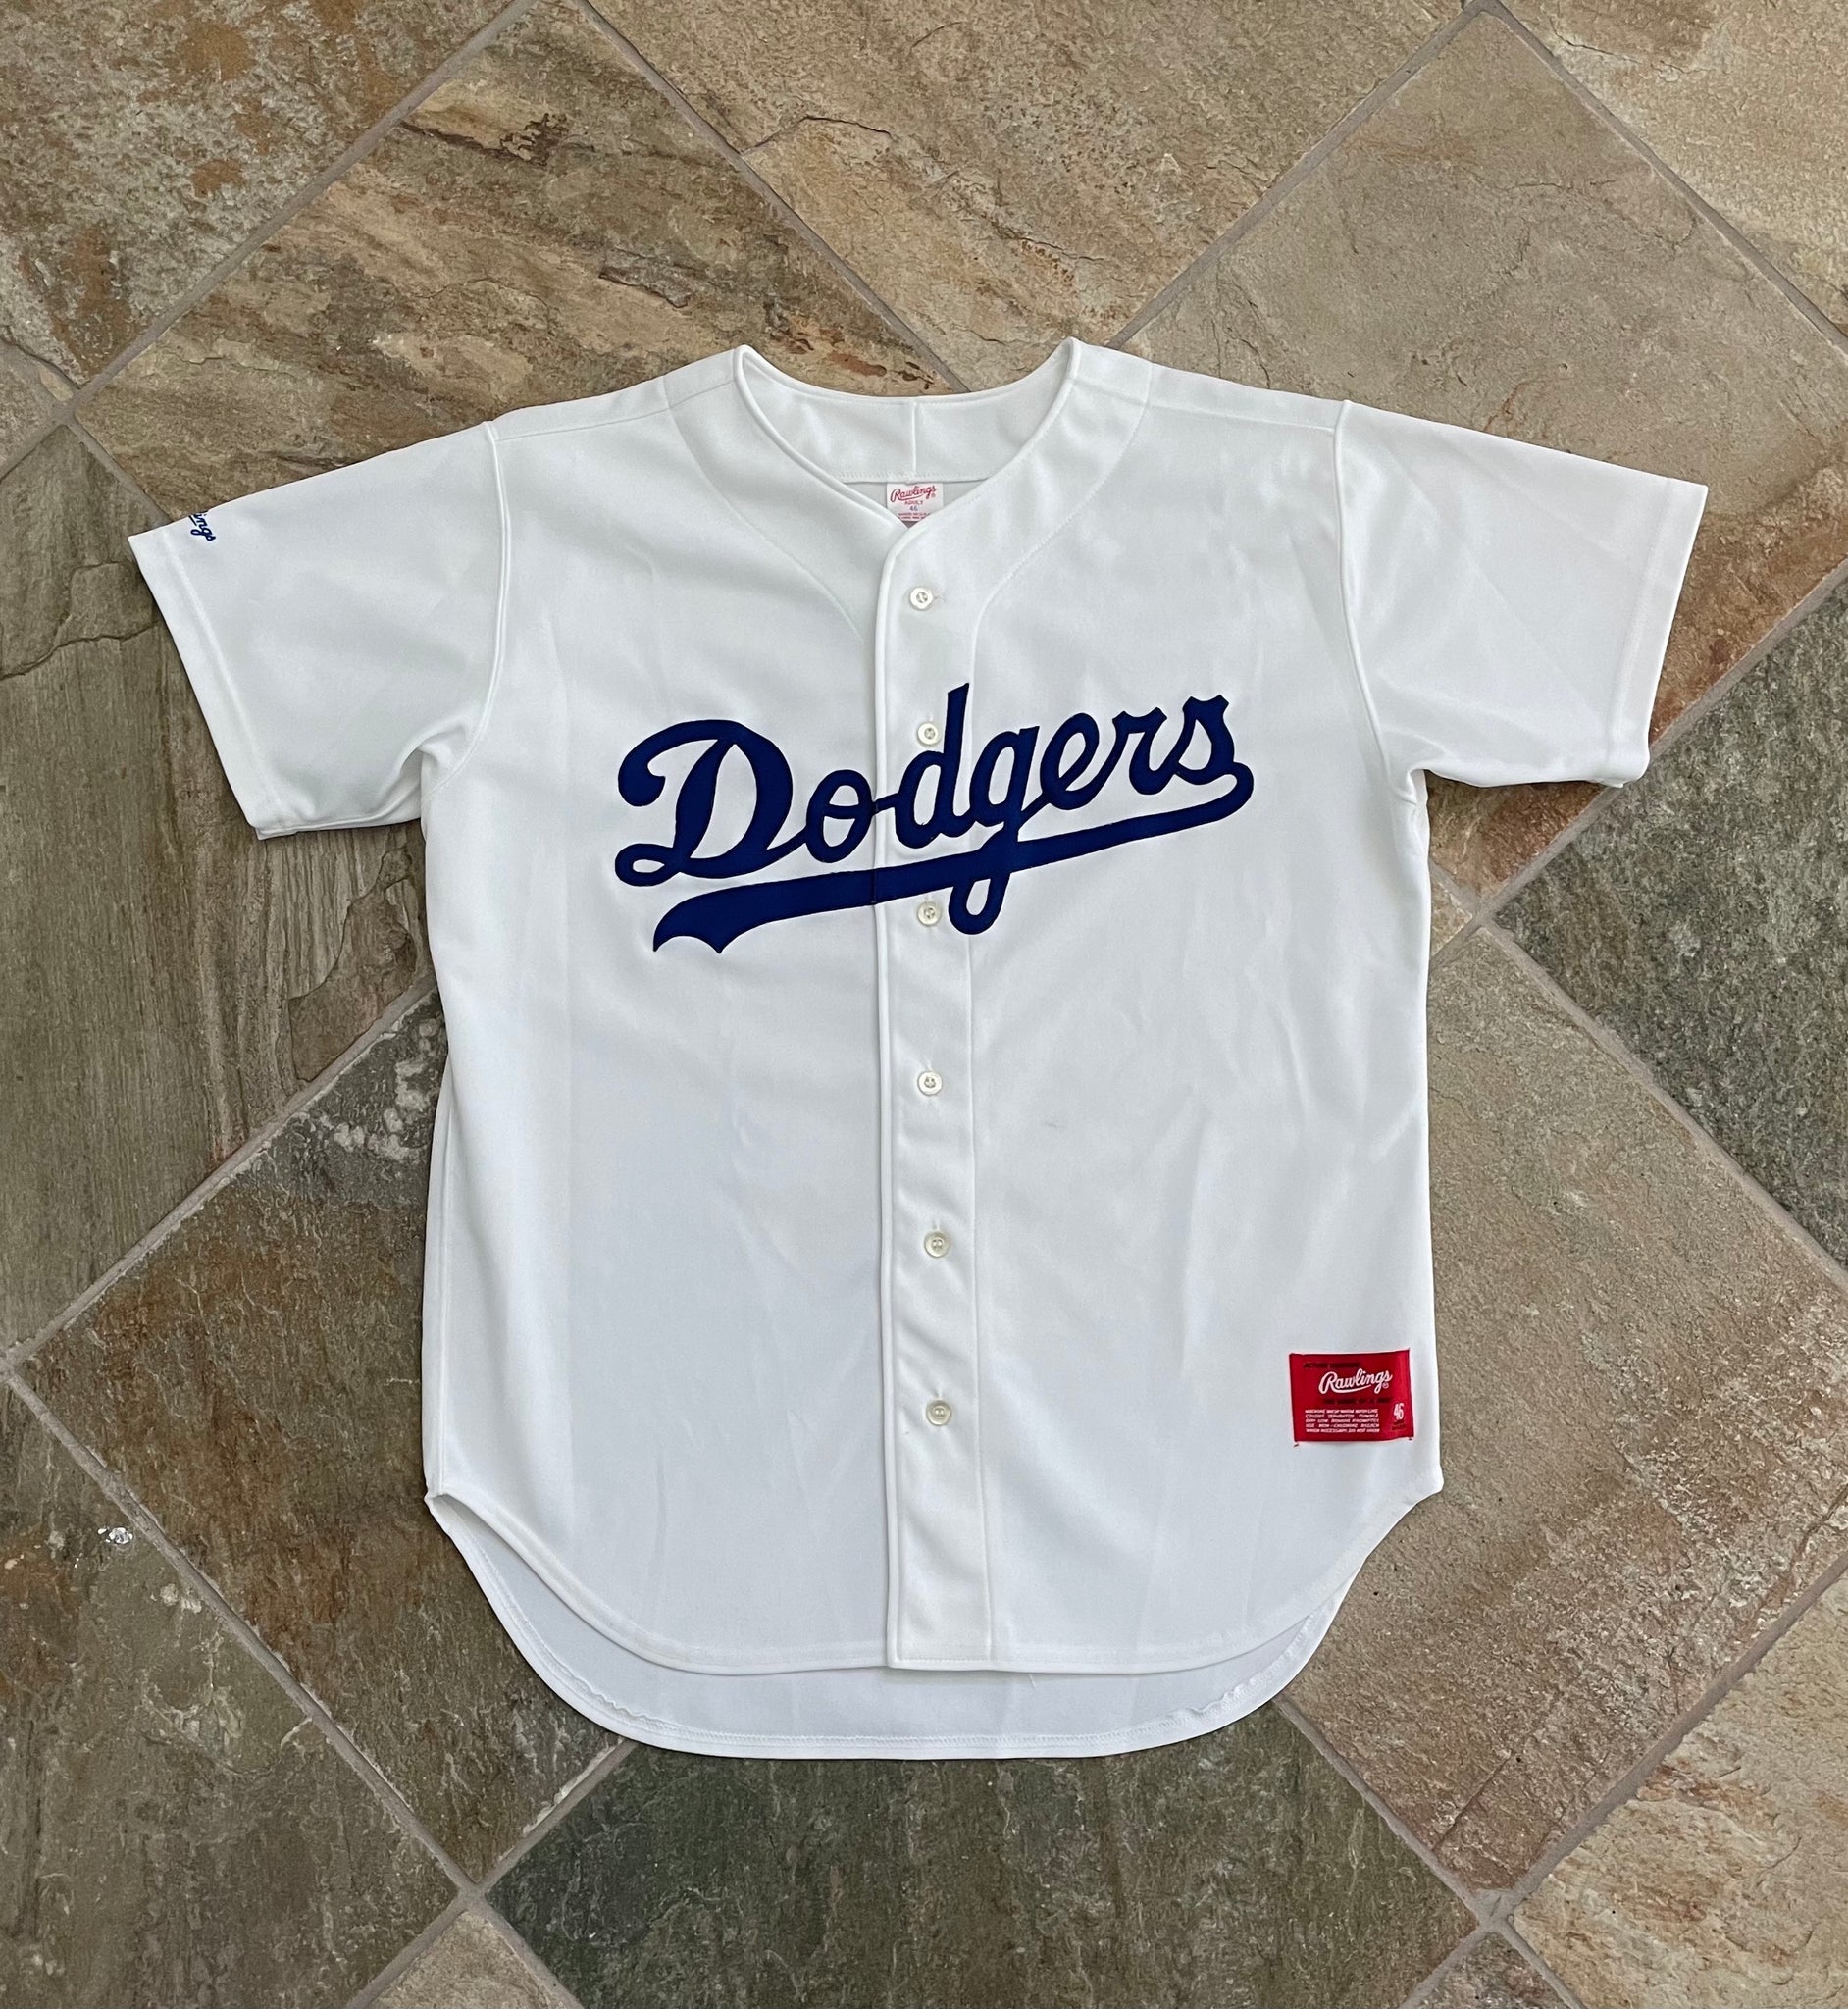 Dodgers Starter Baseball Jersey Vintage 90s Large